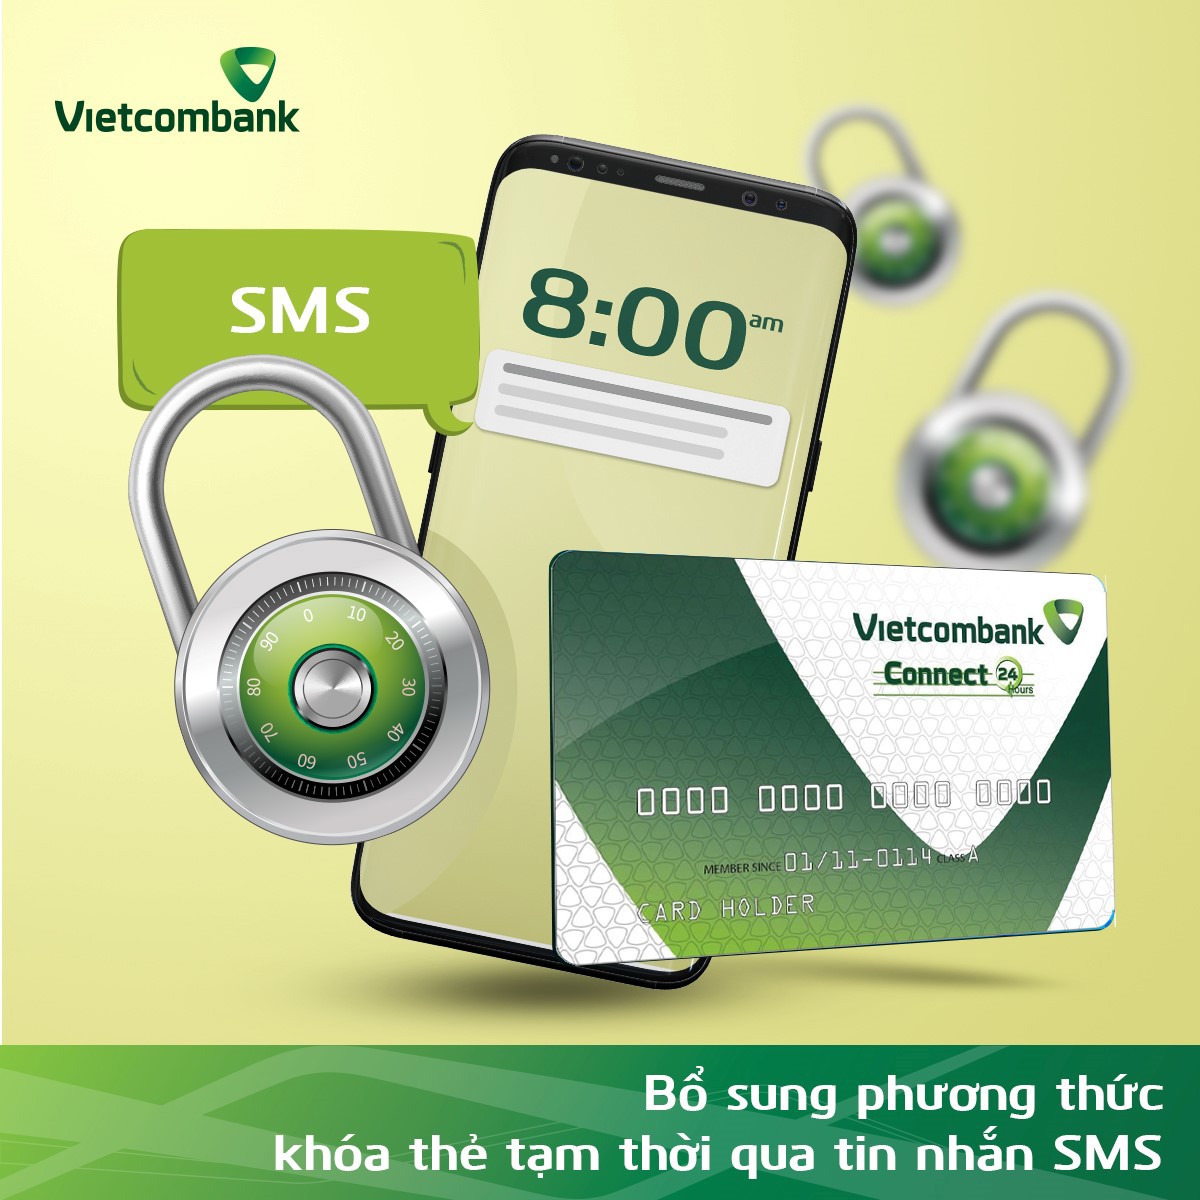 Khách hàng của Vietcombank có thể khóa thẻ tạm thời một cách nhanh chóng để đảm bảo an toàn bị thất lạc hoặc mất thẻ